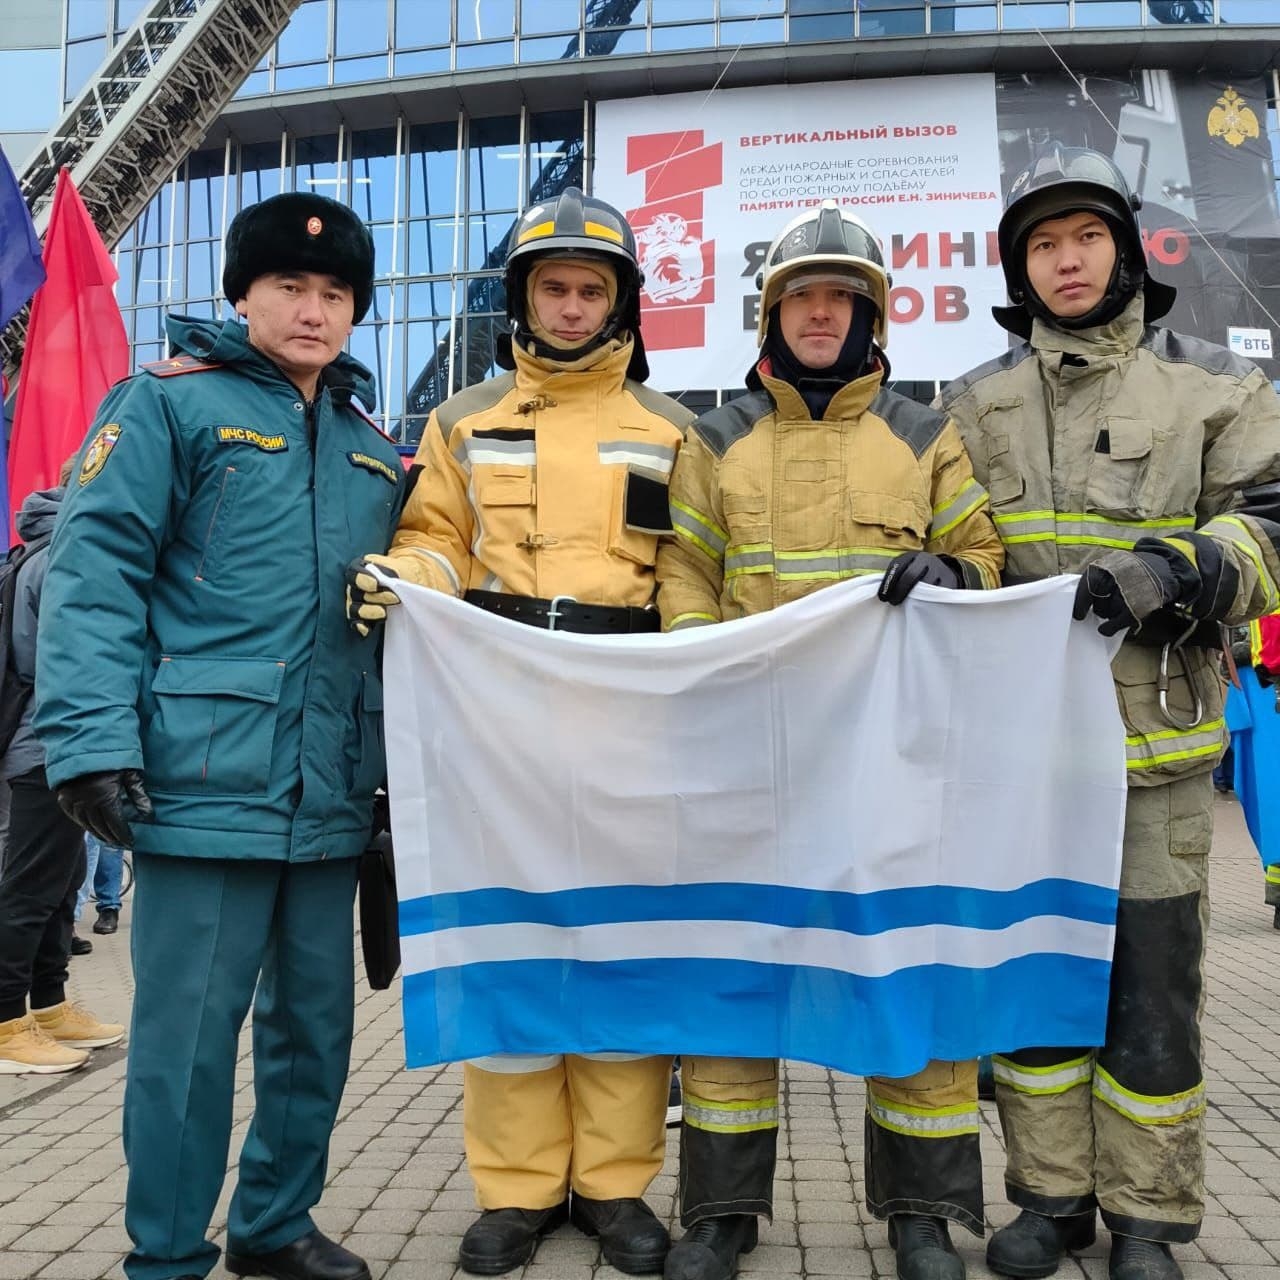 Огнеборцы из Республики Алтай приняли участие в международных соревнованиях «Вертикальный вызов»